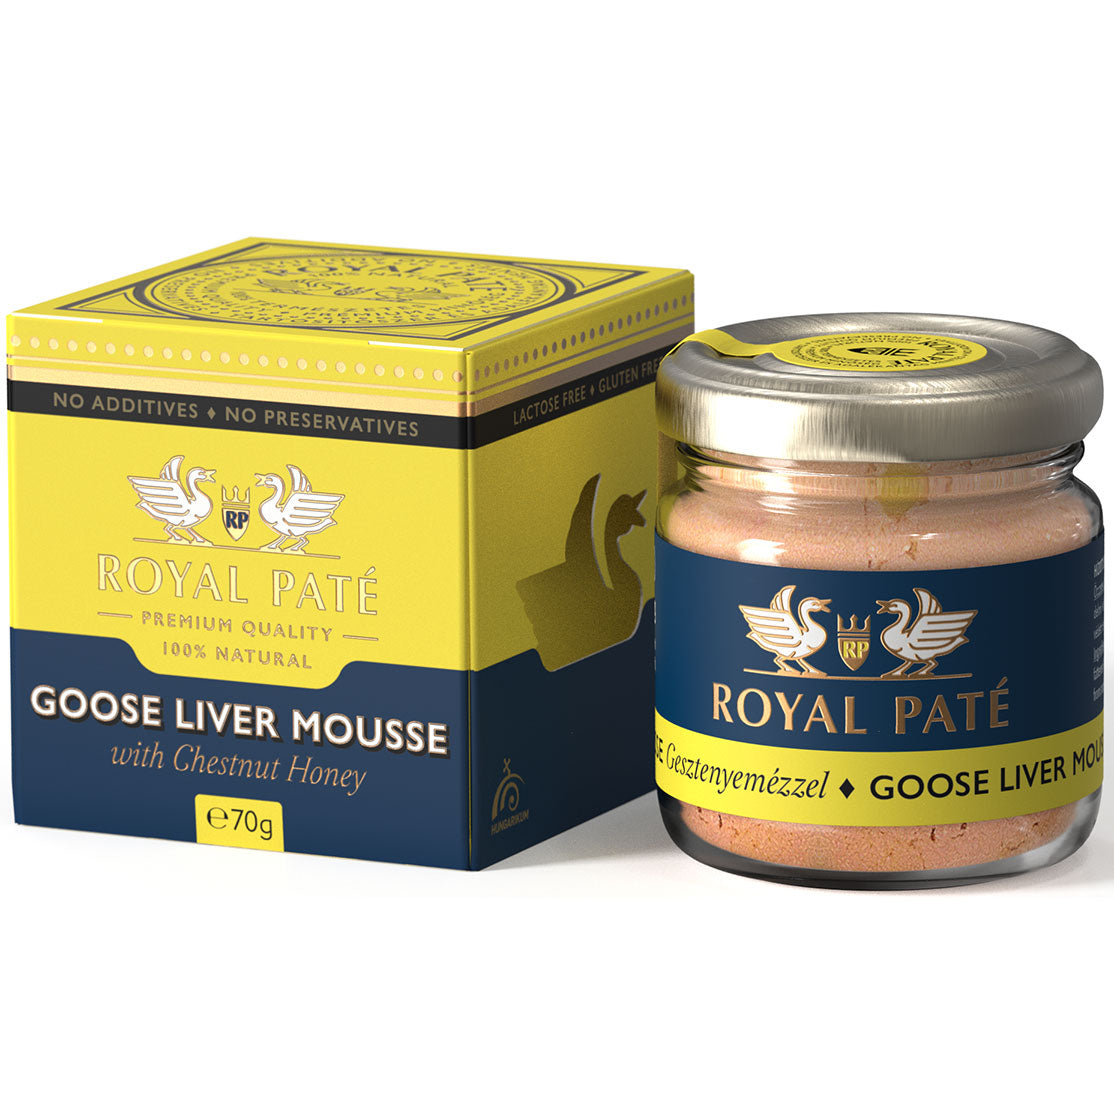 Mousse de foie gras cu miere de castane 60% ficat de gasca Royal Pate 70g